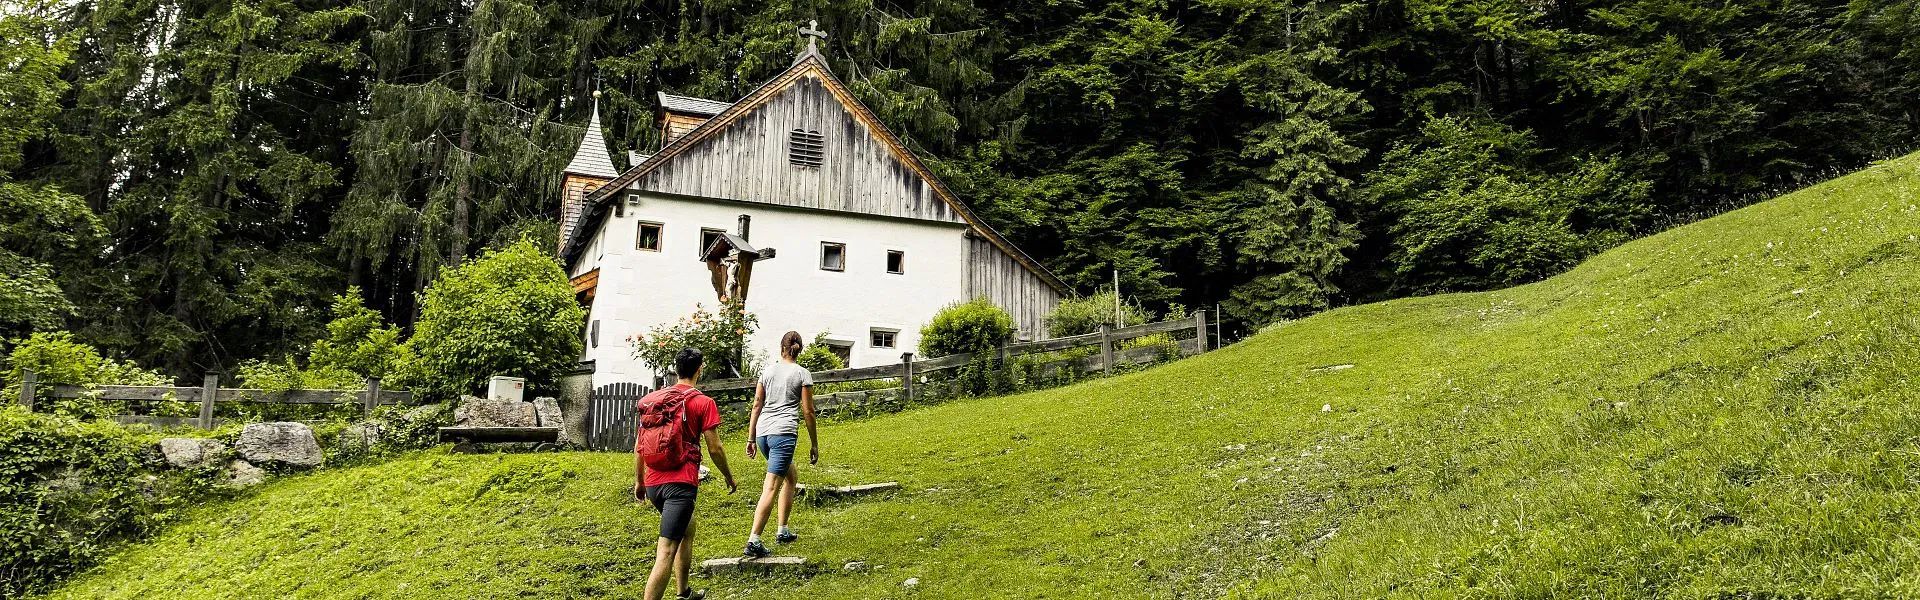 Einsiedelei Koasa Trail Etappe 1 - Region St. Johann in Tirol